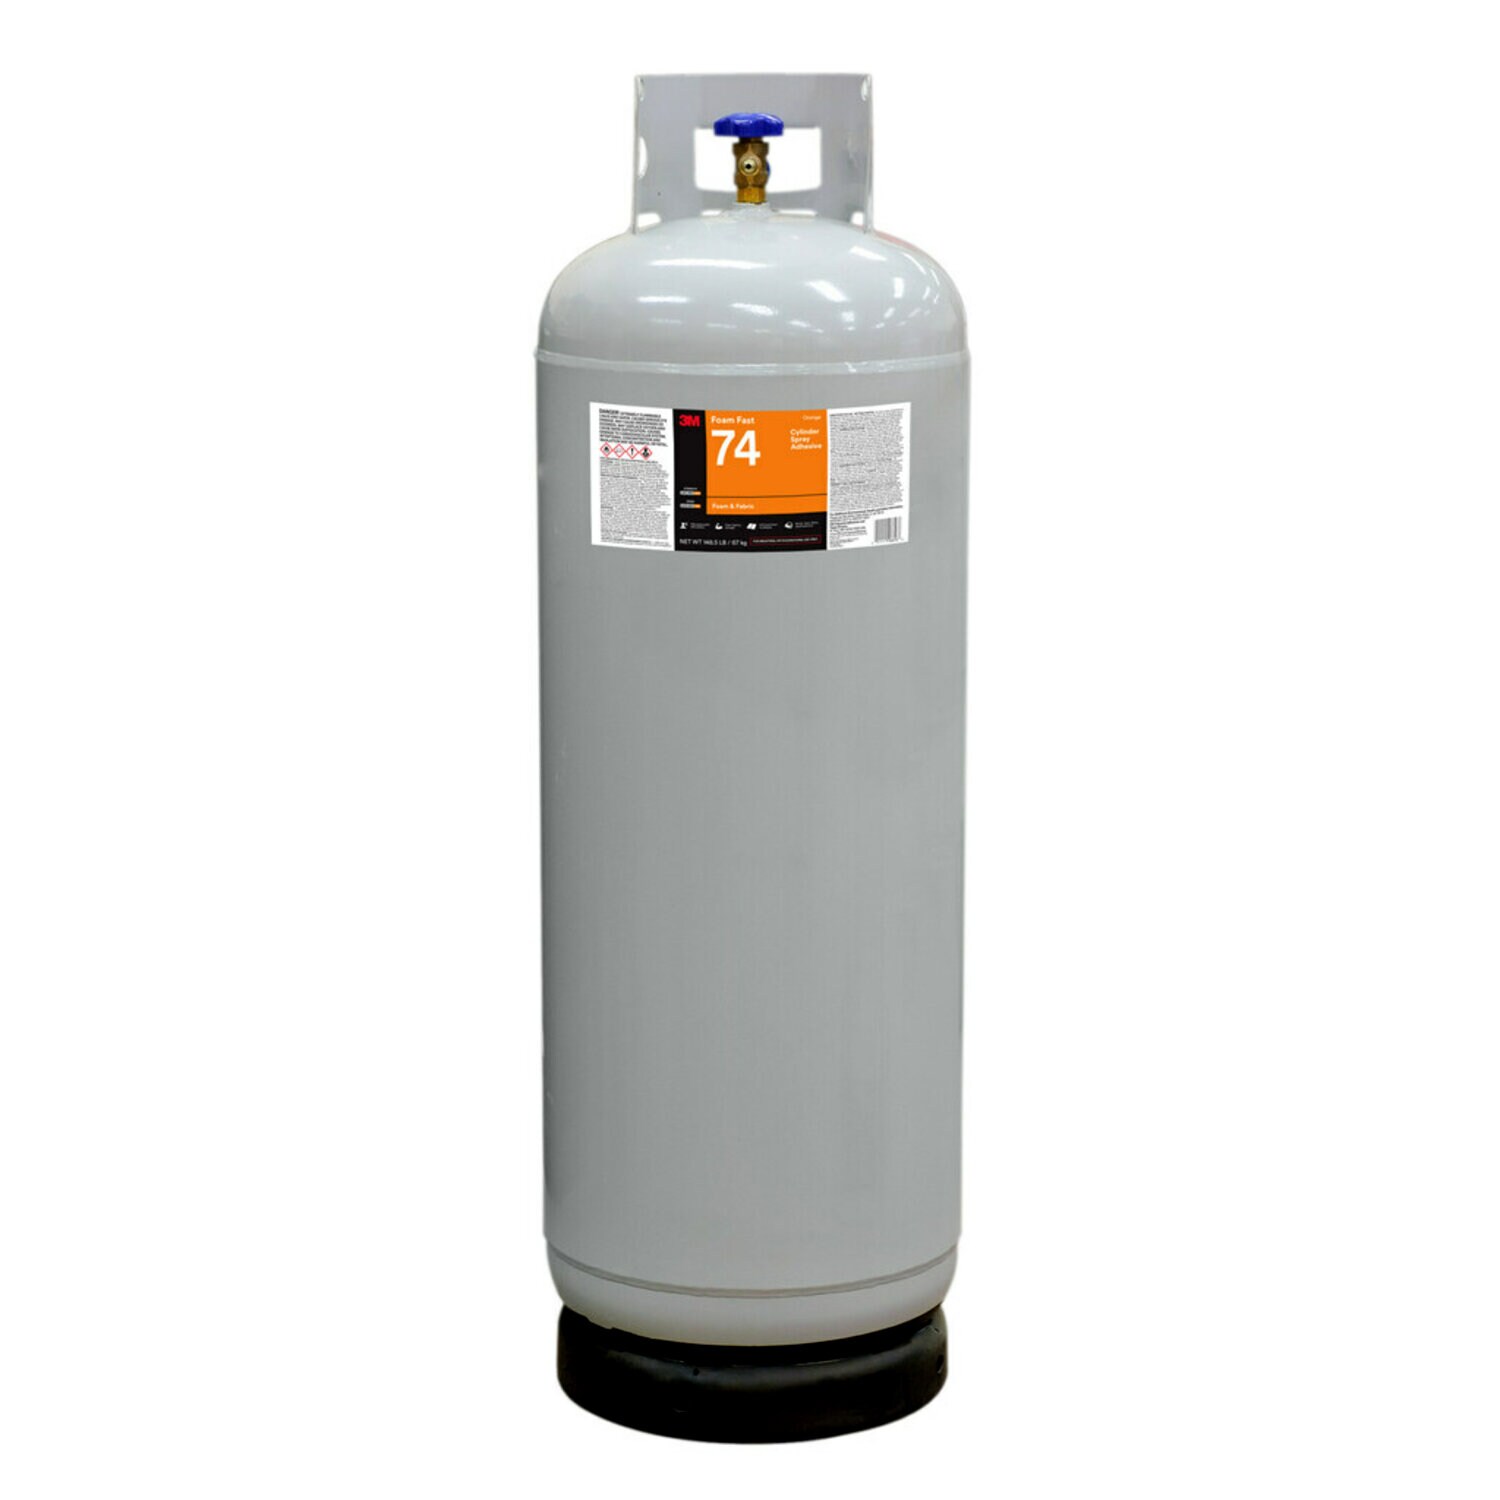 7010366367 - 3M Foam Fast 74 Cylinder Spray Adhesive, Orange, Intermediate Cylinder
(Net Wt 148.5 lb)